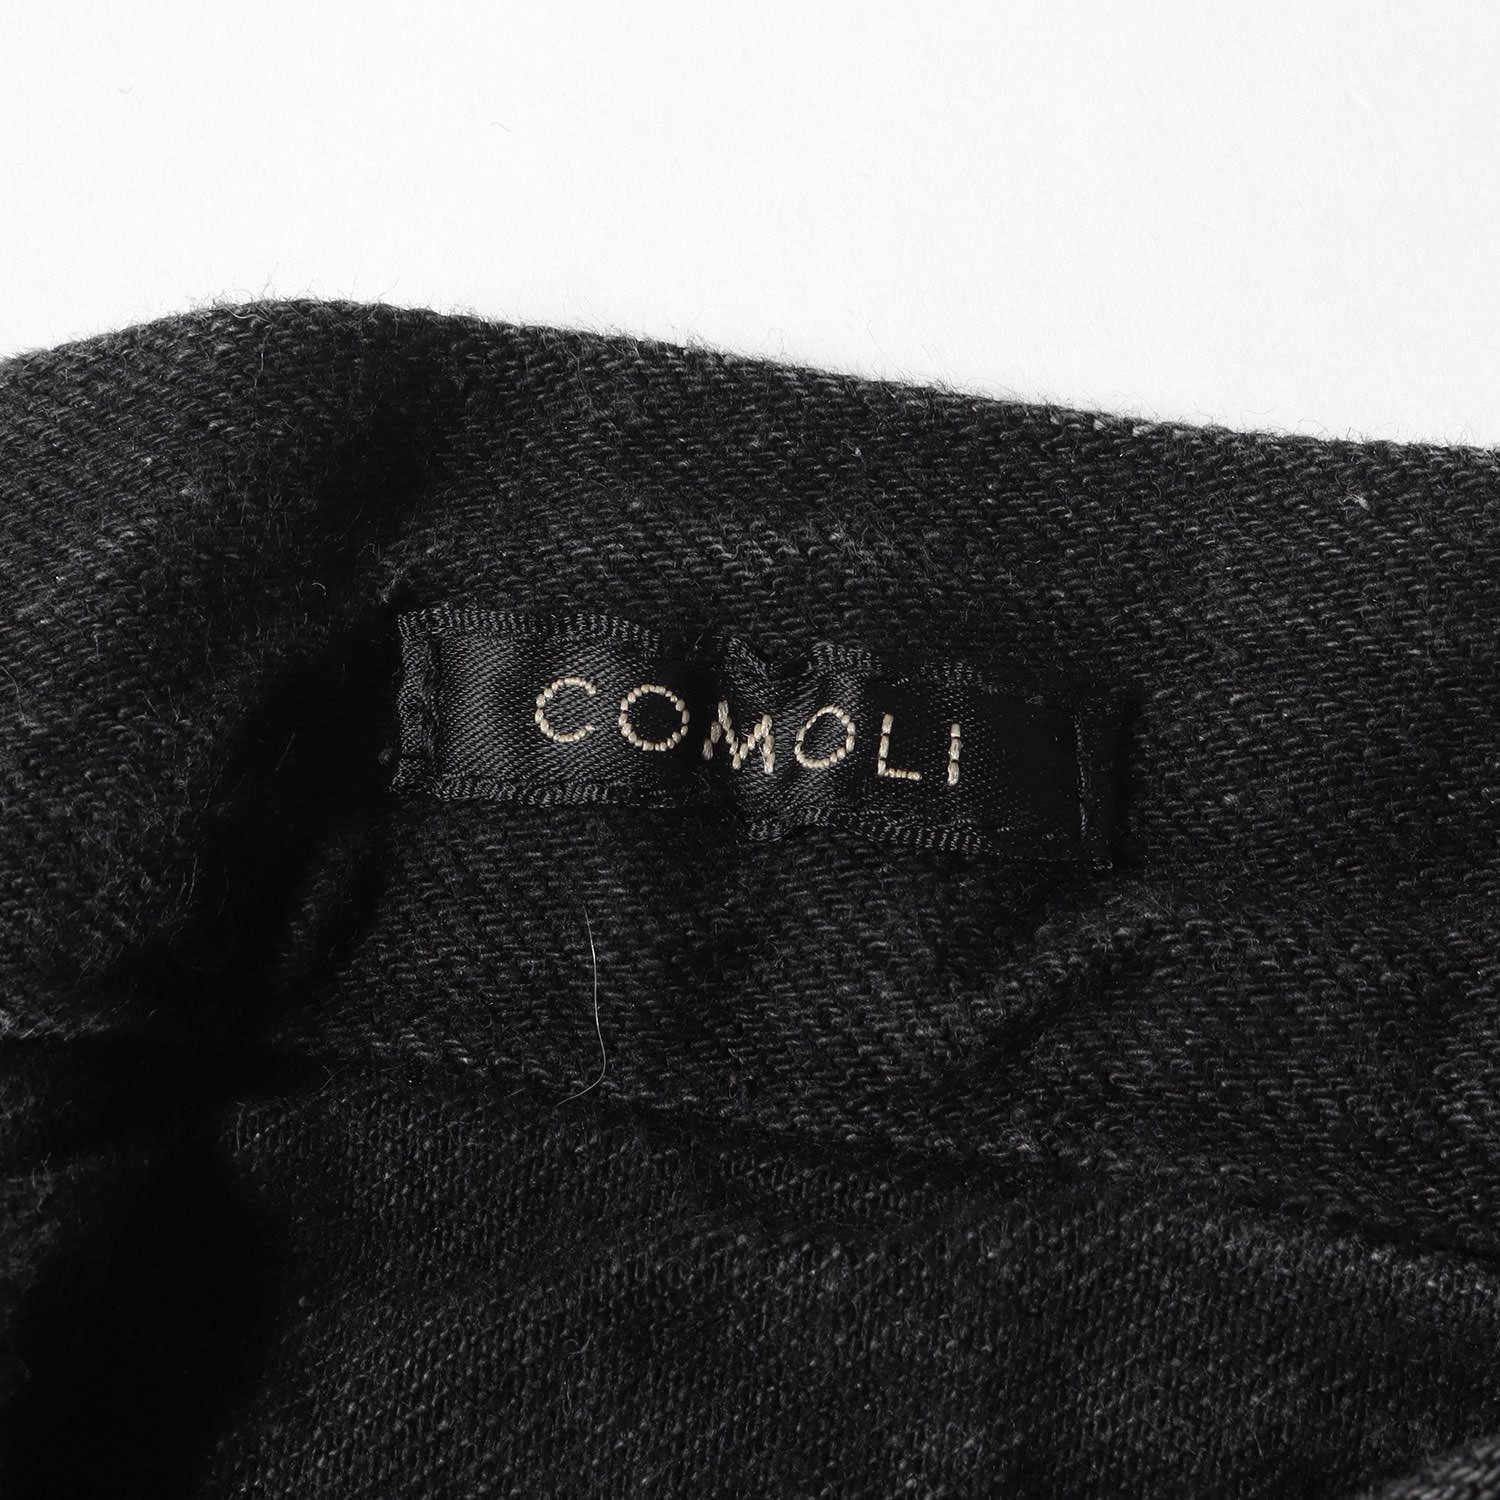 COMOLI コモリ デニム サイズ:0 22SS デニム オーバー パンツ V01-03002 ジーンズ バックルバック サスペンダー ボタン  ブラック 黒 ボトムス ズボン ジーンズ ジーパン カジュアル シンプル ブランド 日本製